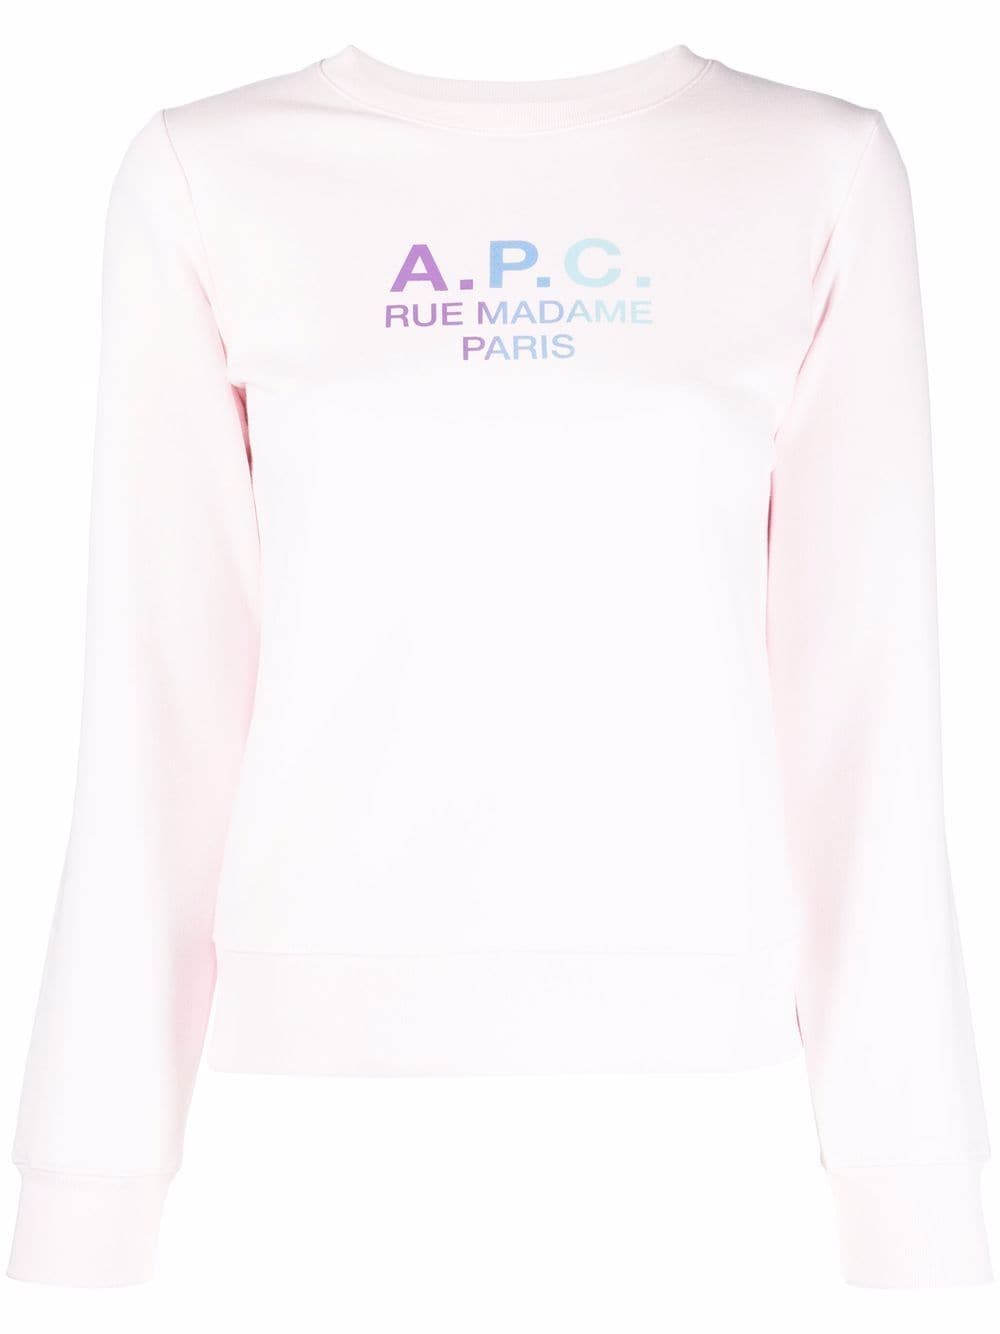 A.P.C. Rue Madame Paris cotton sweatshirt - Pink von A.P.C.